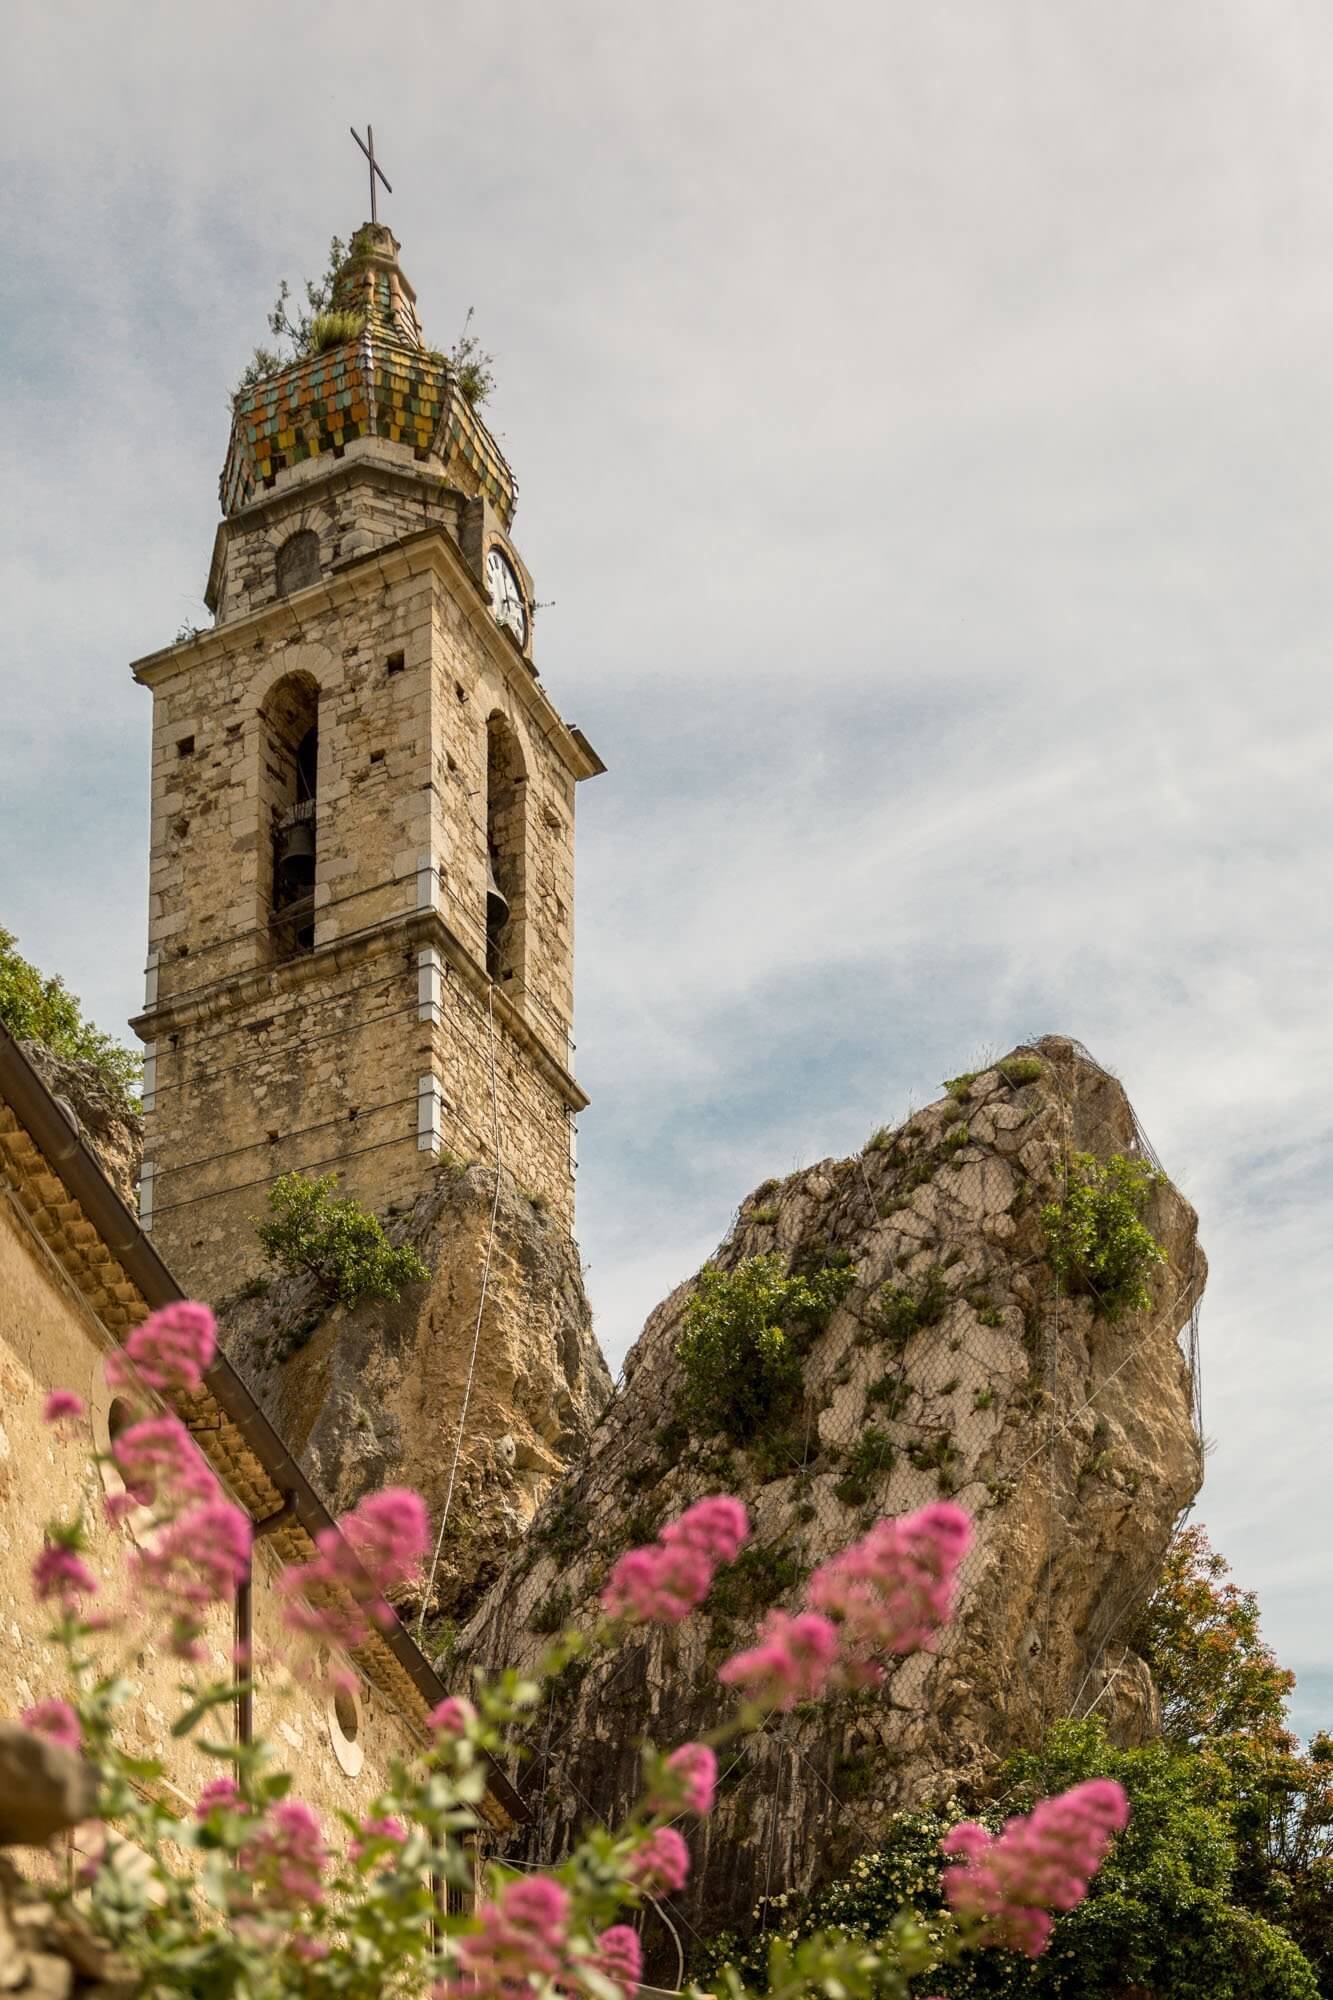 The bell tower of Chiesa di San Silvestro, in Bagnoli del Trigno, Molise, Italy